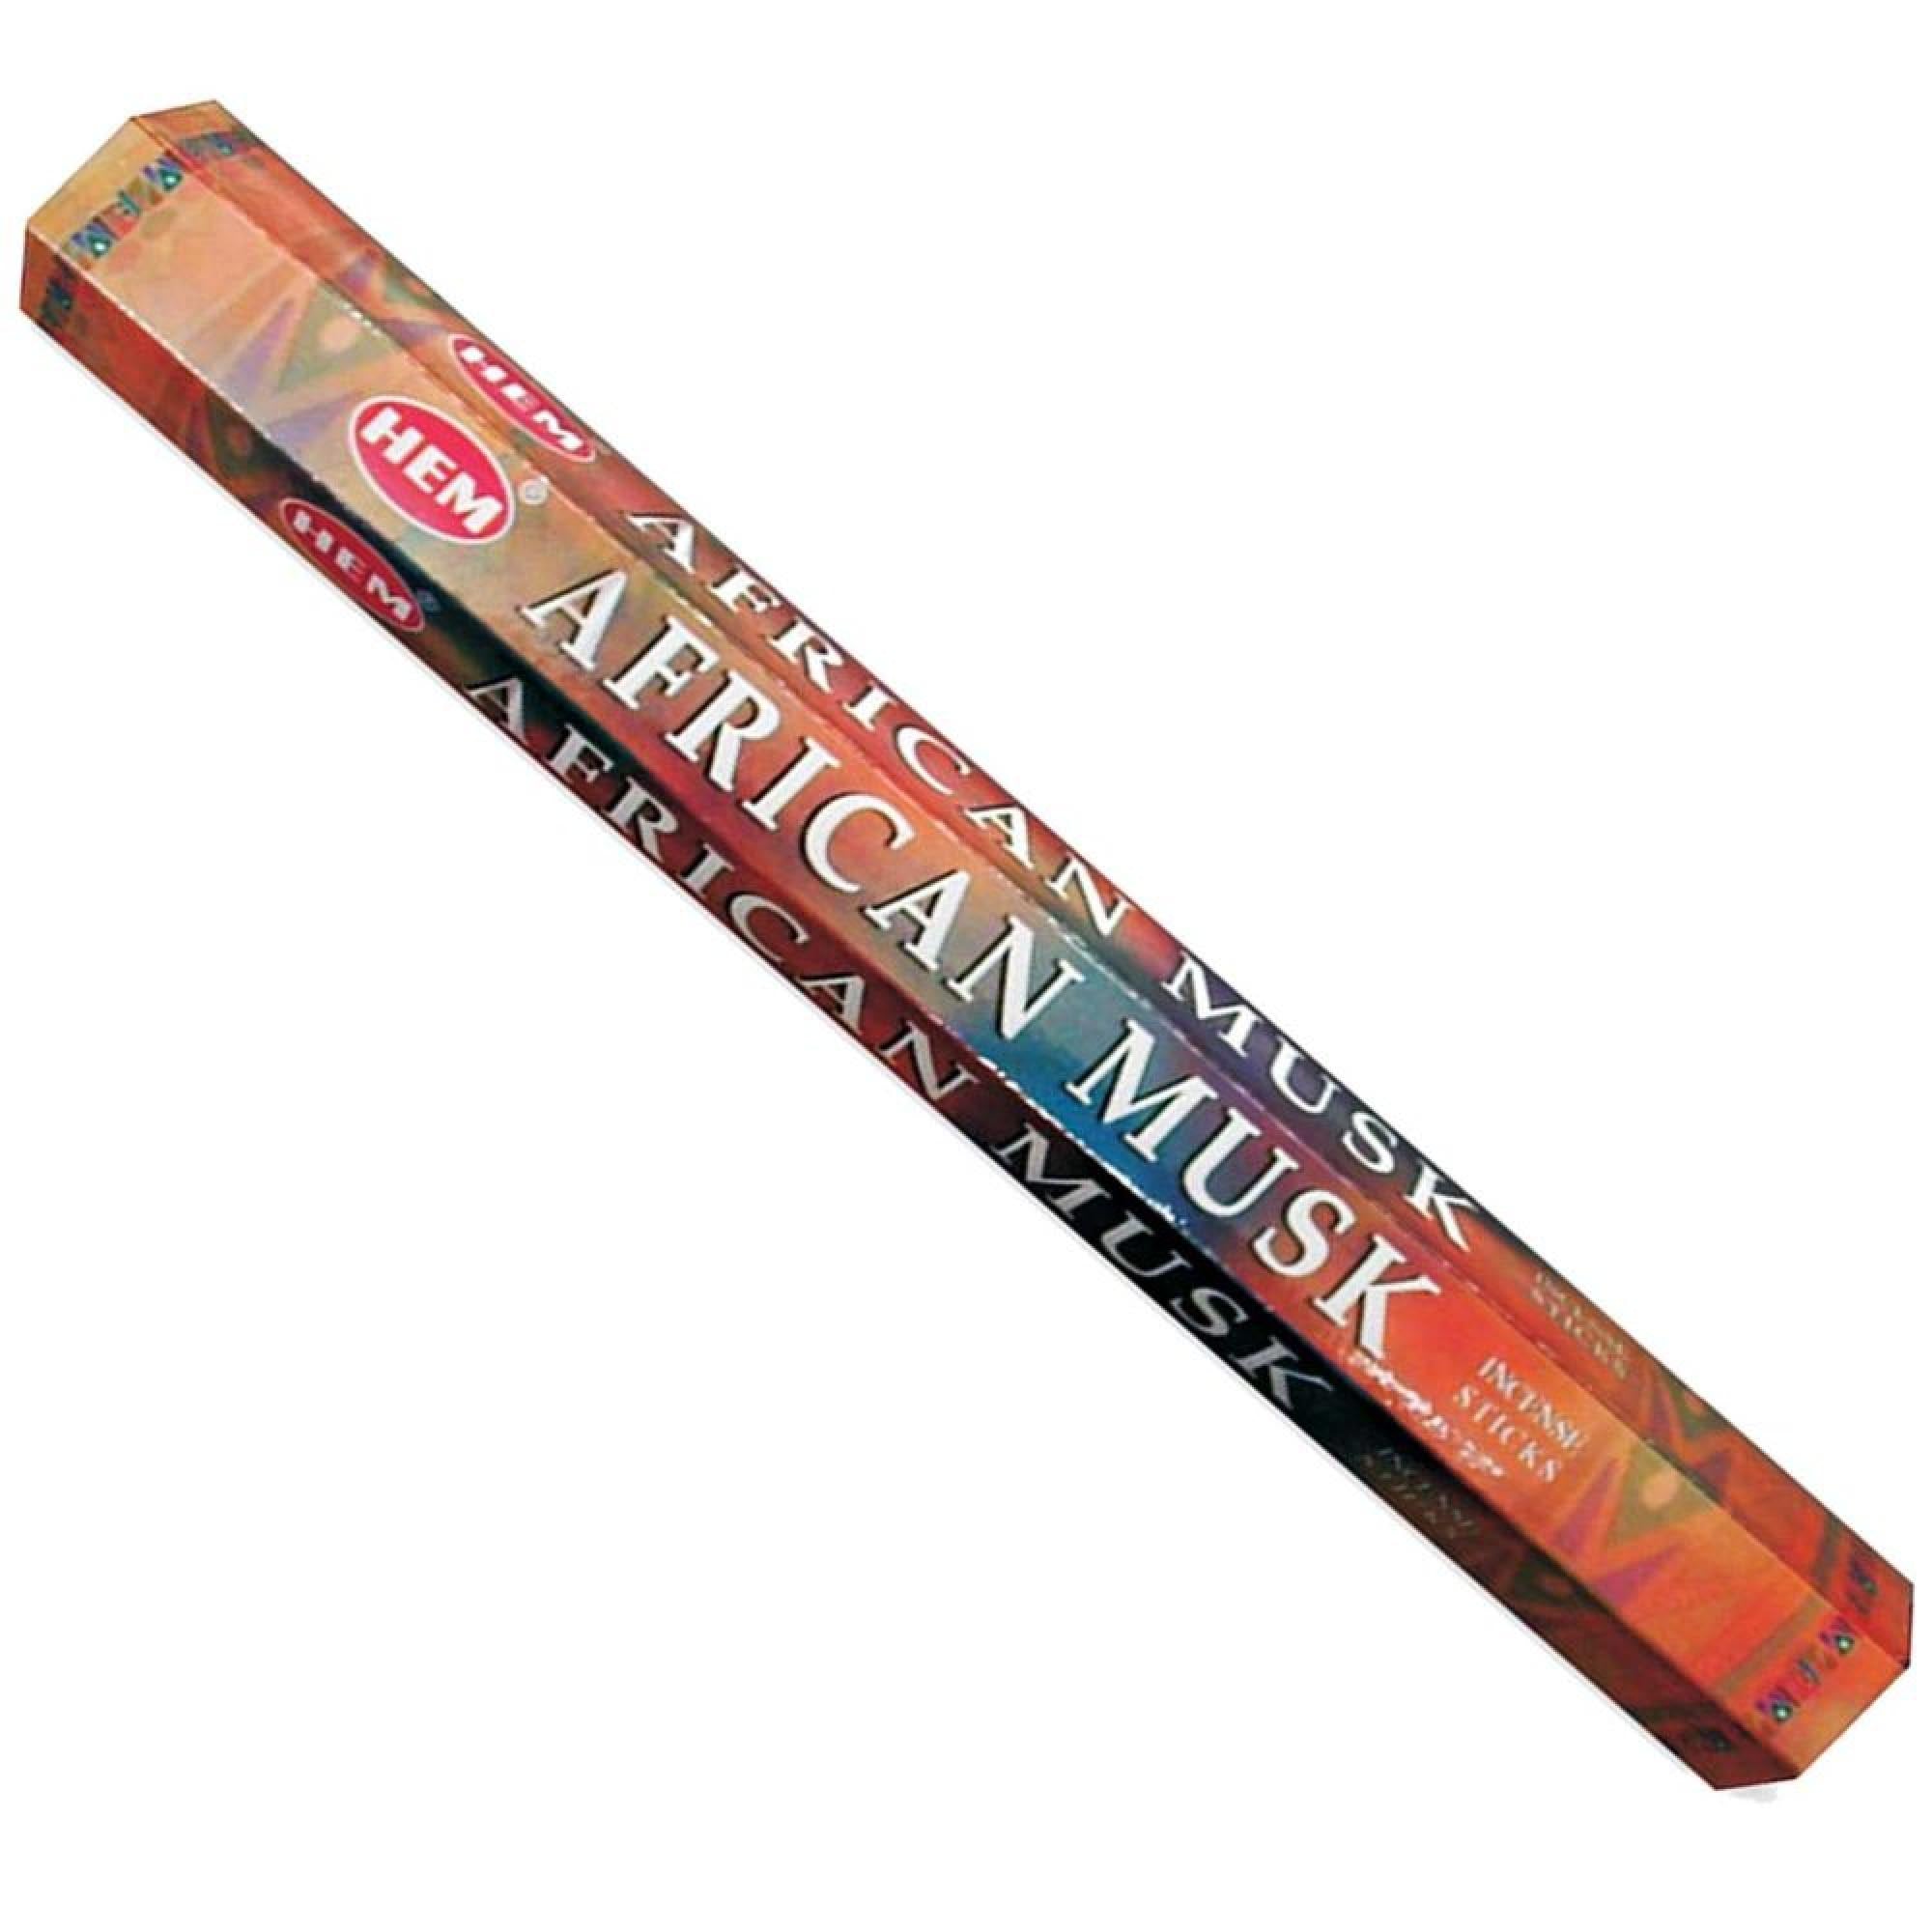 HEM - Hexagon - African Musk Incense Sticks